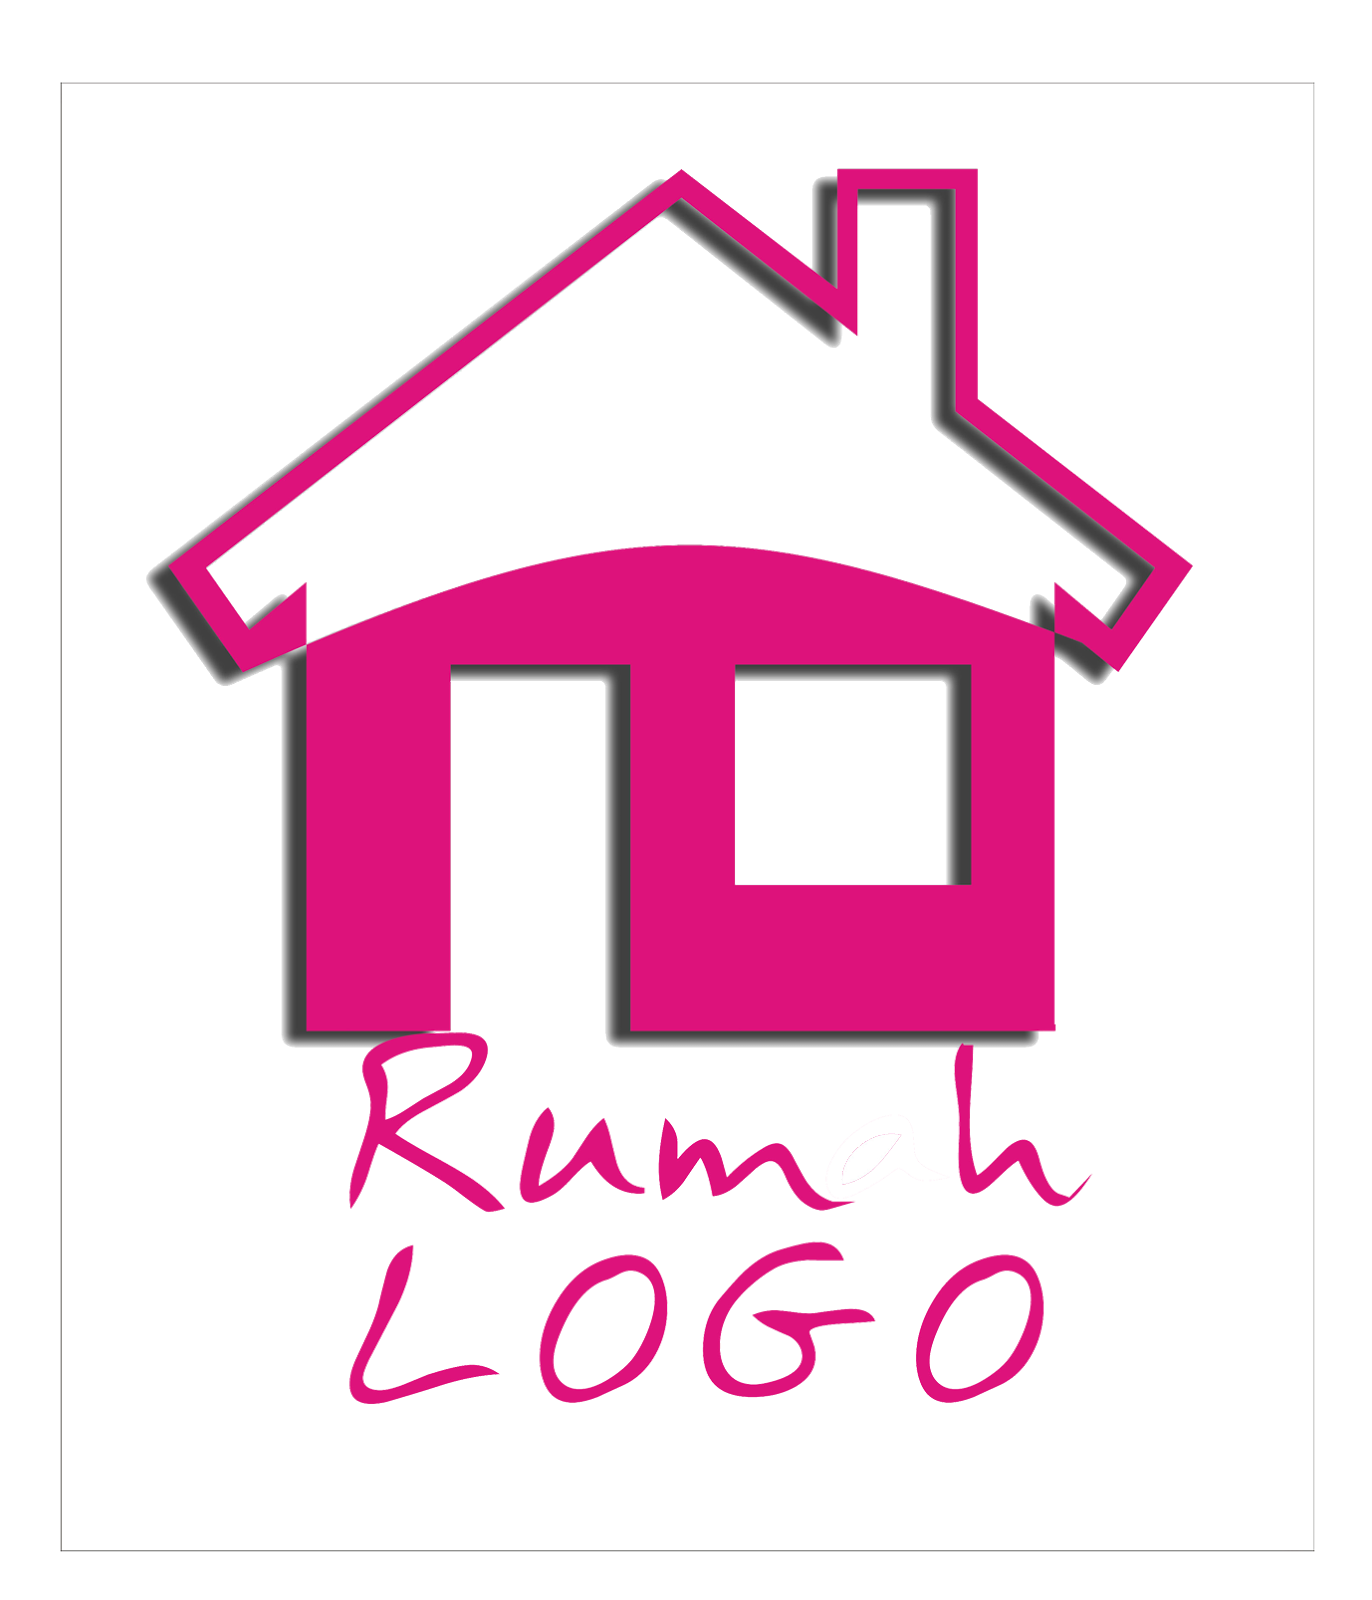  Rumah  Logo RUMAH  LOGO 